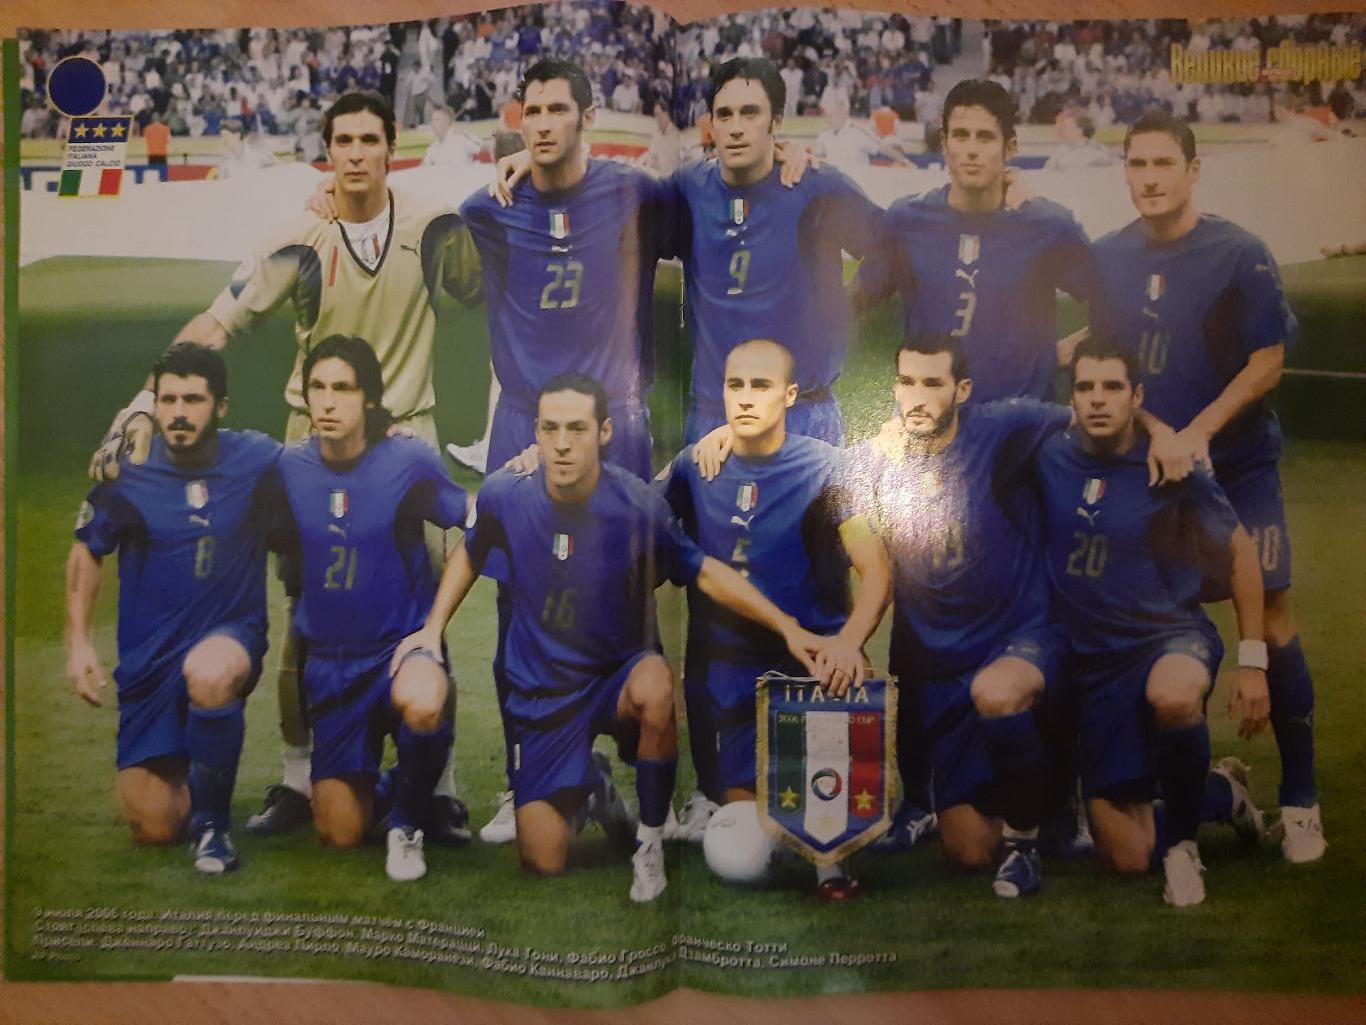 Спецвыпуск еженедельника Футбол #8,2006 Великие сборные: Италия том 1. 1